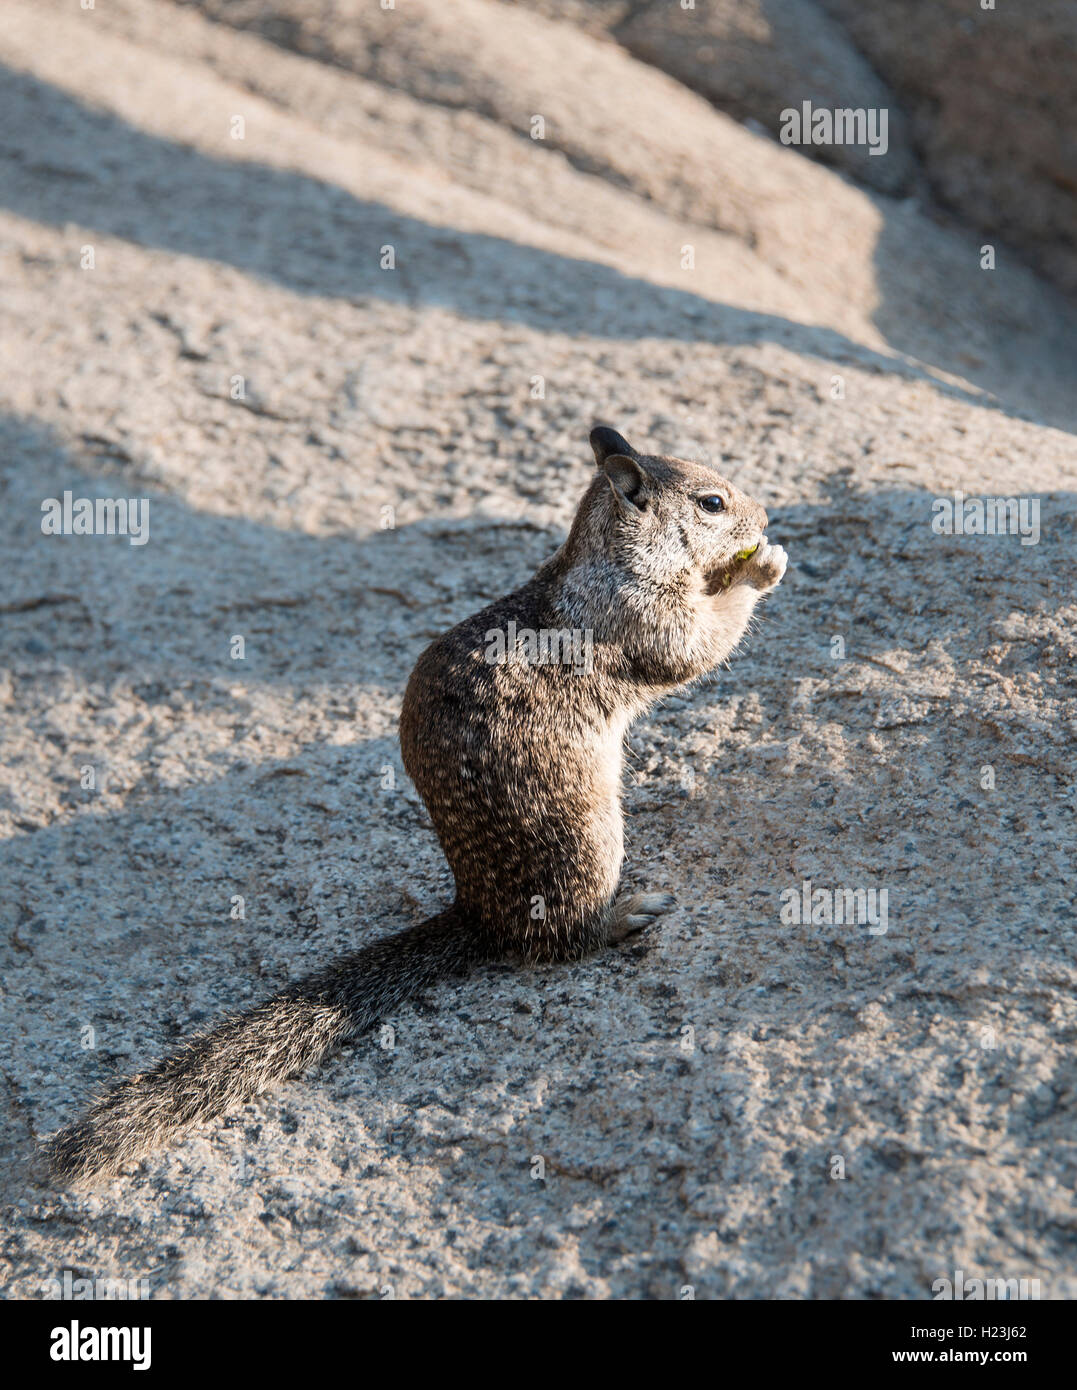 La massa della California scoiattolo (Spermophilus beecheyi) alimentazione, Yosemite National Park, California, Stati Uniti d'America Foto Stock